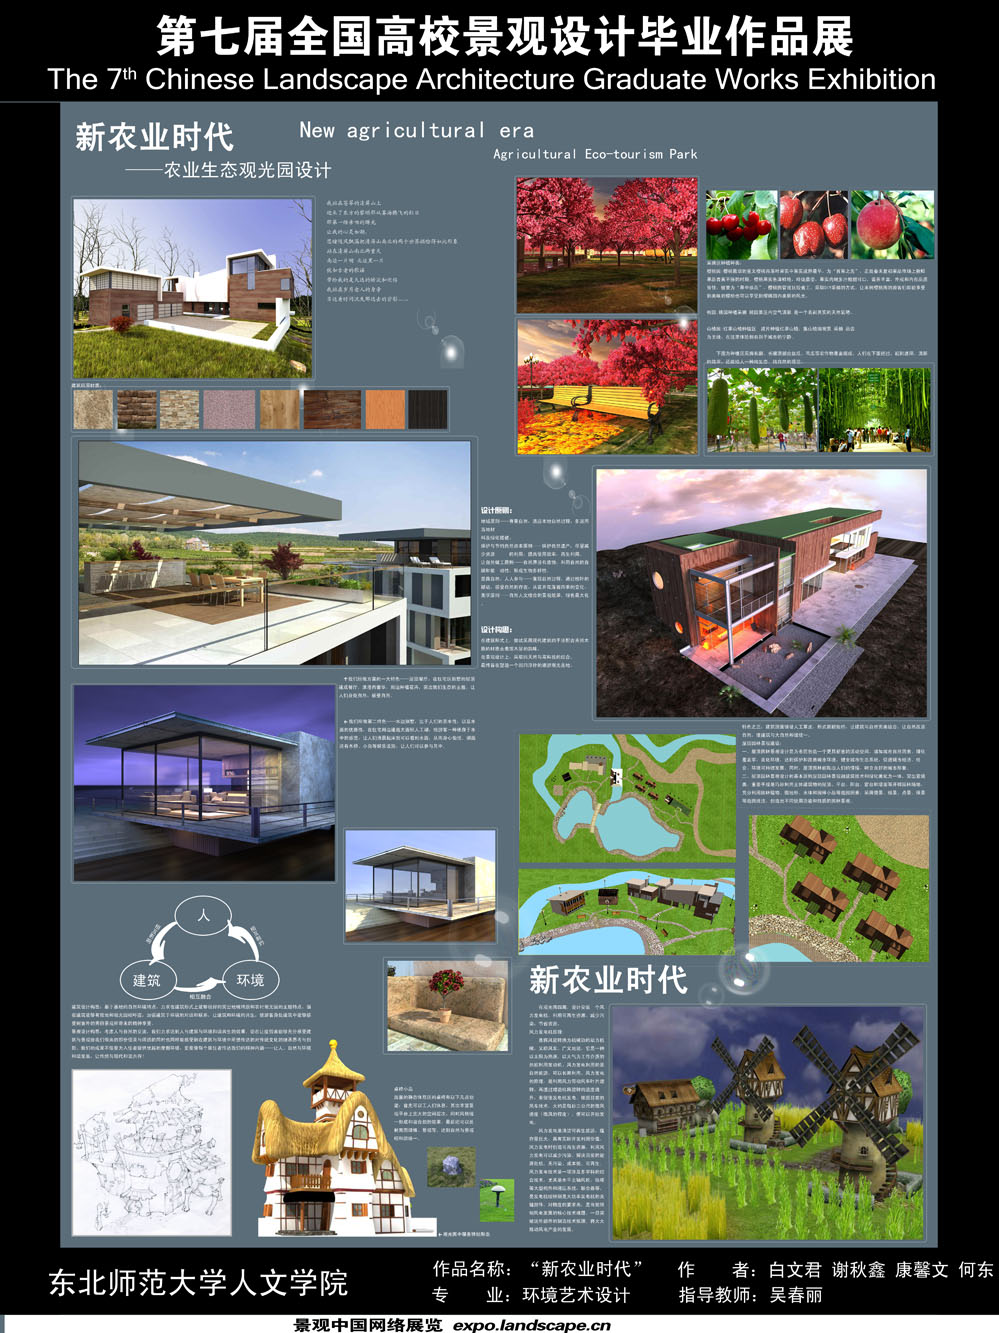 新农业时代——农业生态观光园设计-2